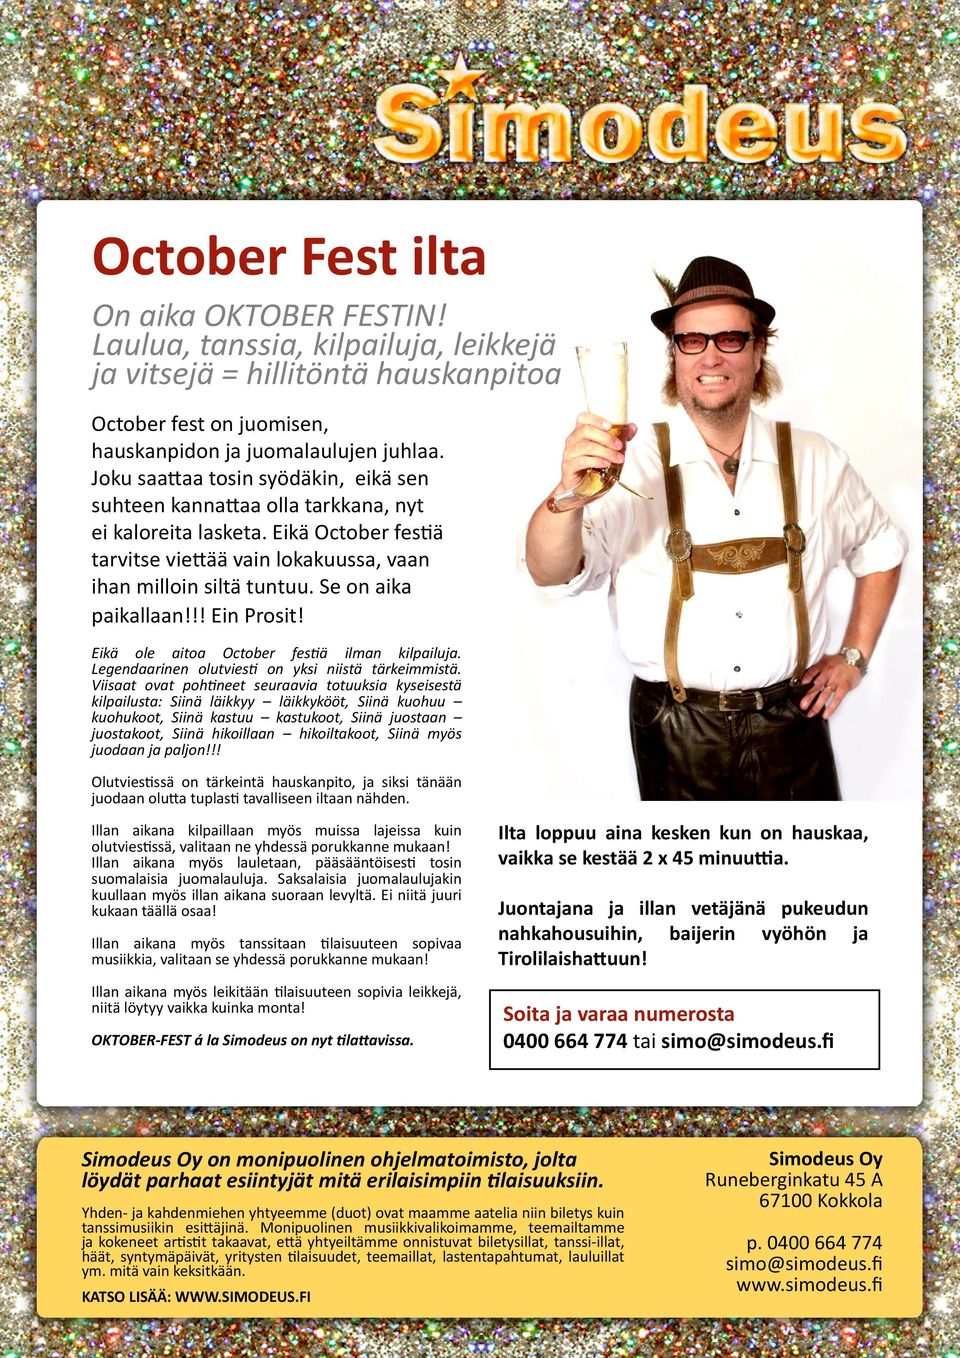 Se on aika paikallaan!!! Ein Prosit! Eikä ole aitoa October festiä ilman kilpailuja. Legendaarinen olutviesti on yksi niistä tärkeimmistä.